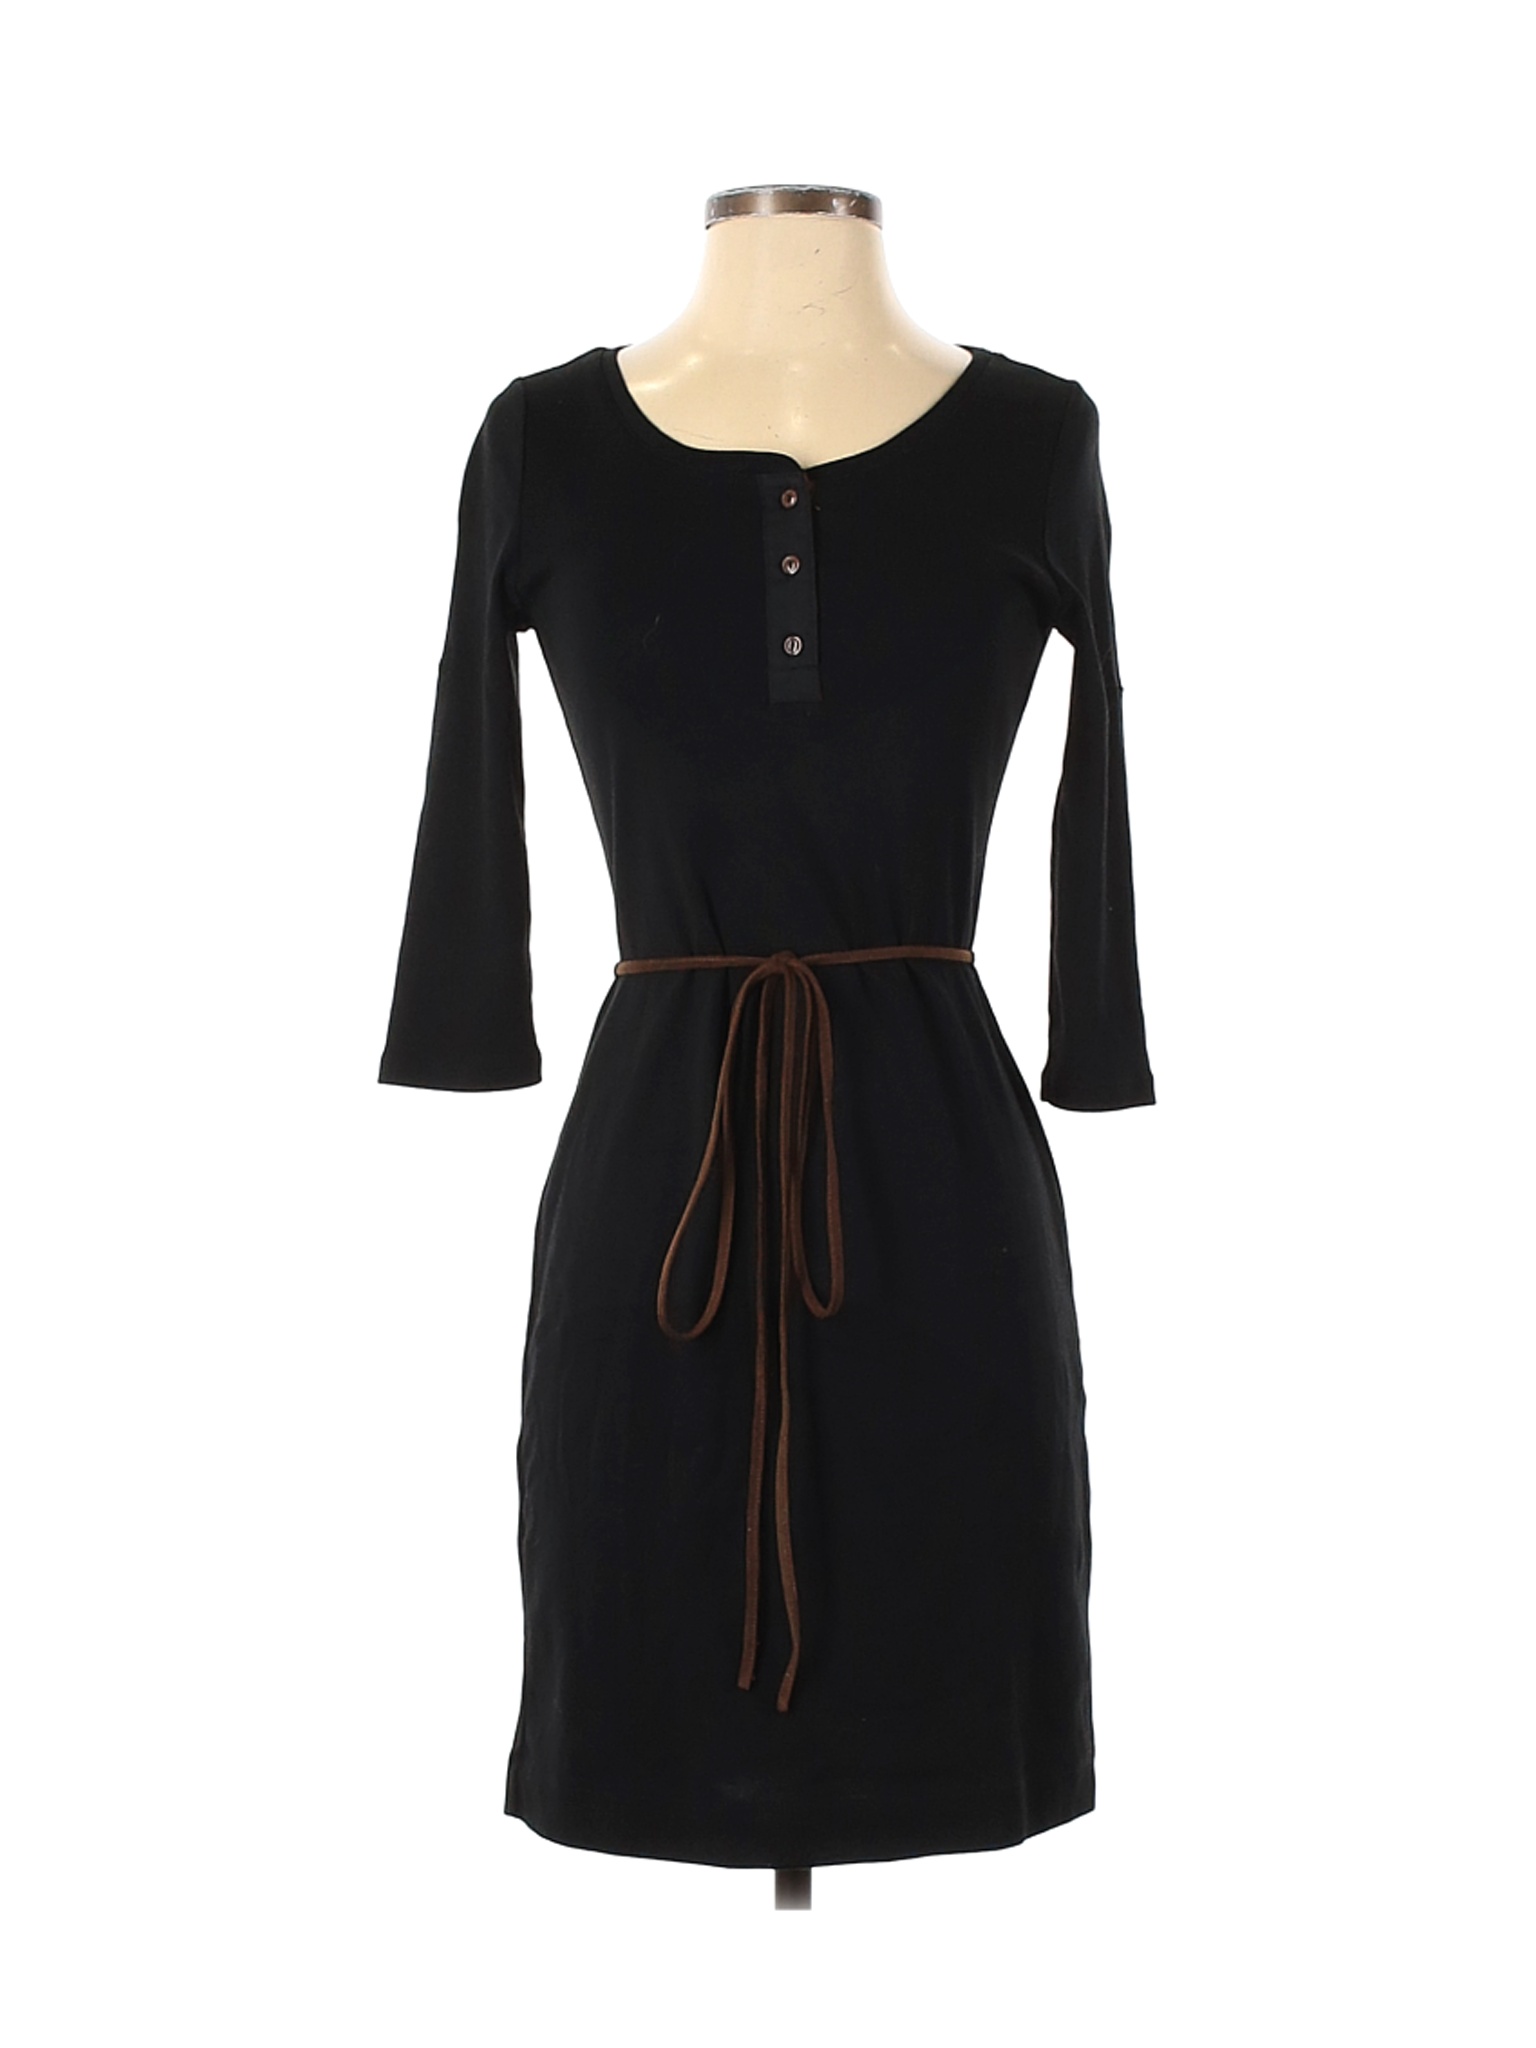 Lauren by Ralph Lauren Women Black Casual Dress XS Petites | eBay